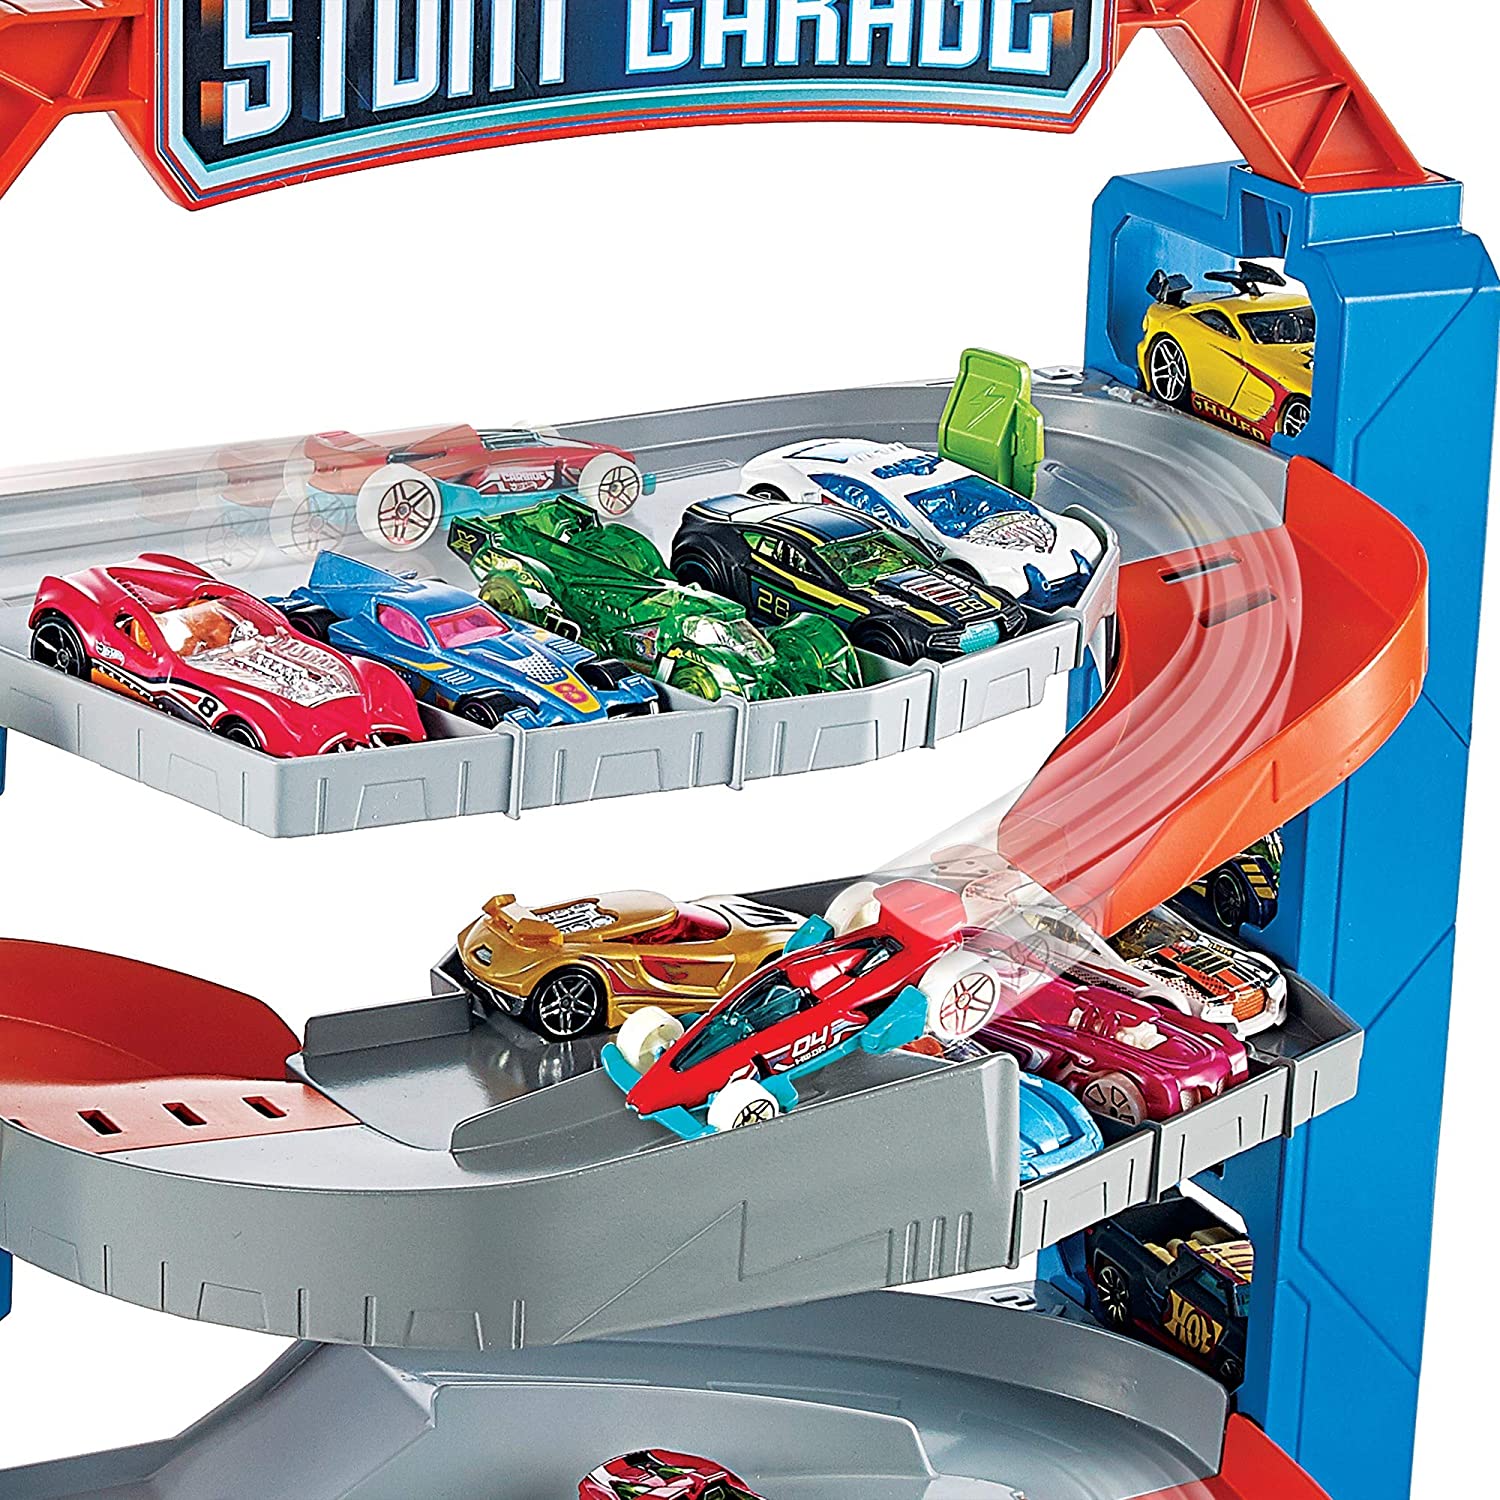 Hot Wheels Pista City - Stunt Garage GNL70 - Mattel